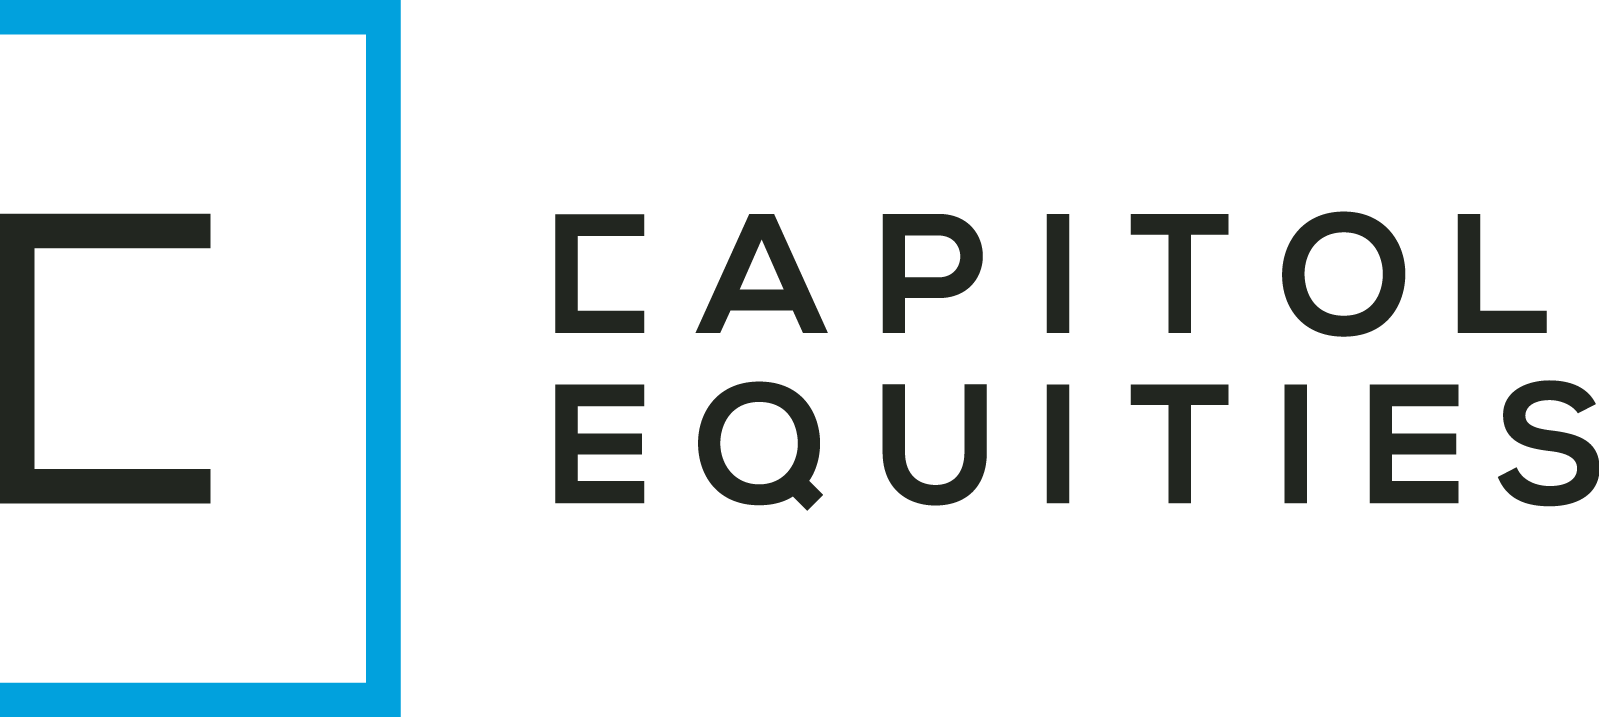 Capital Equiies Logo